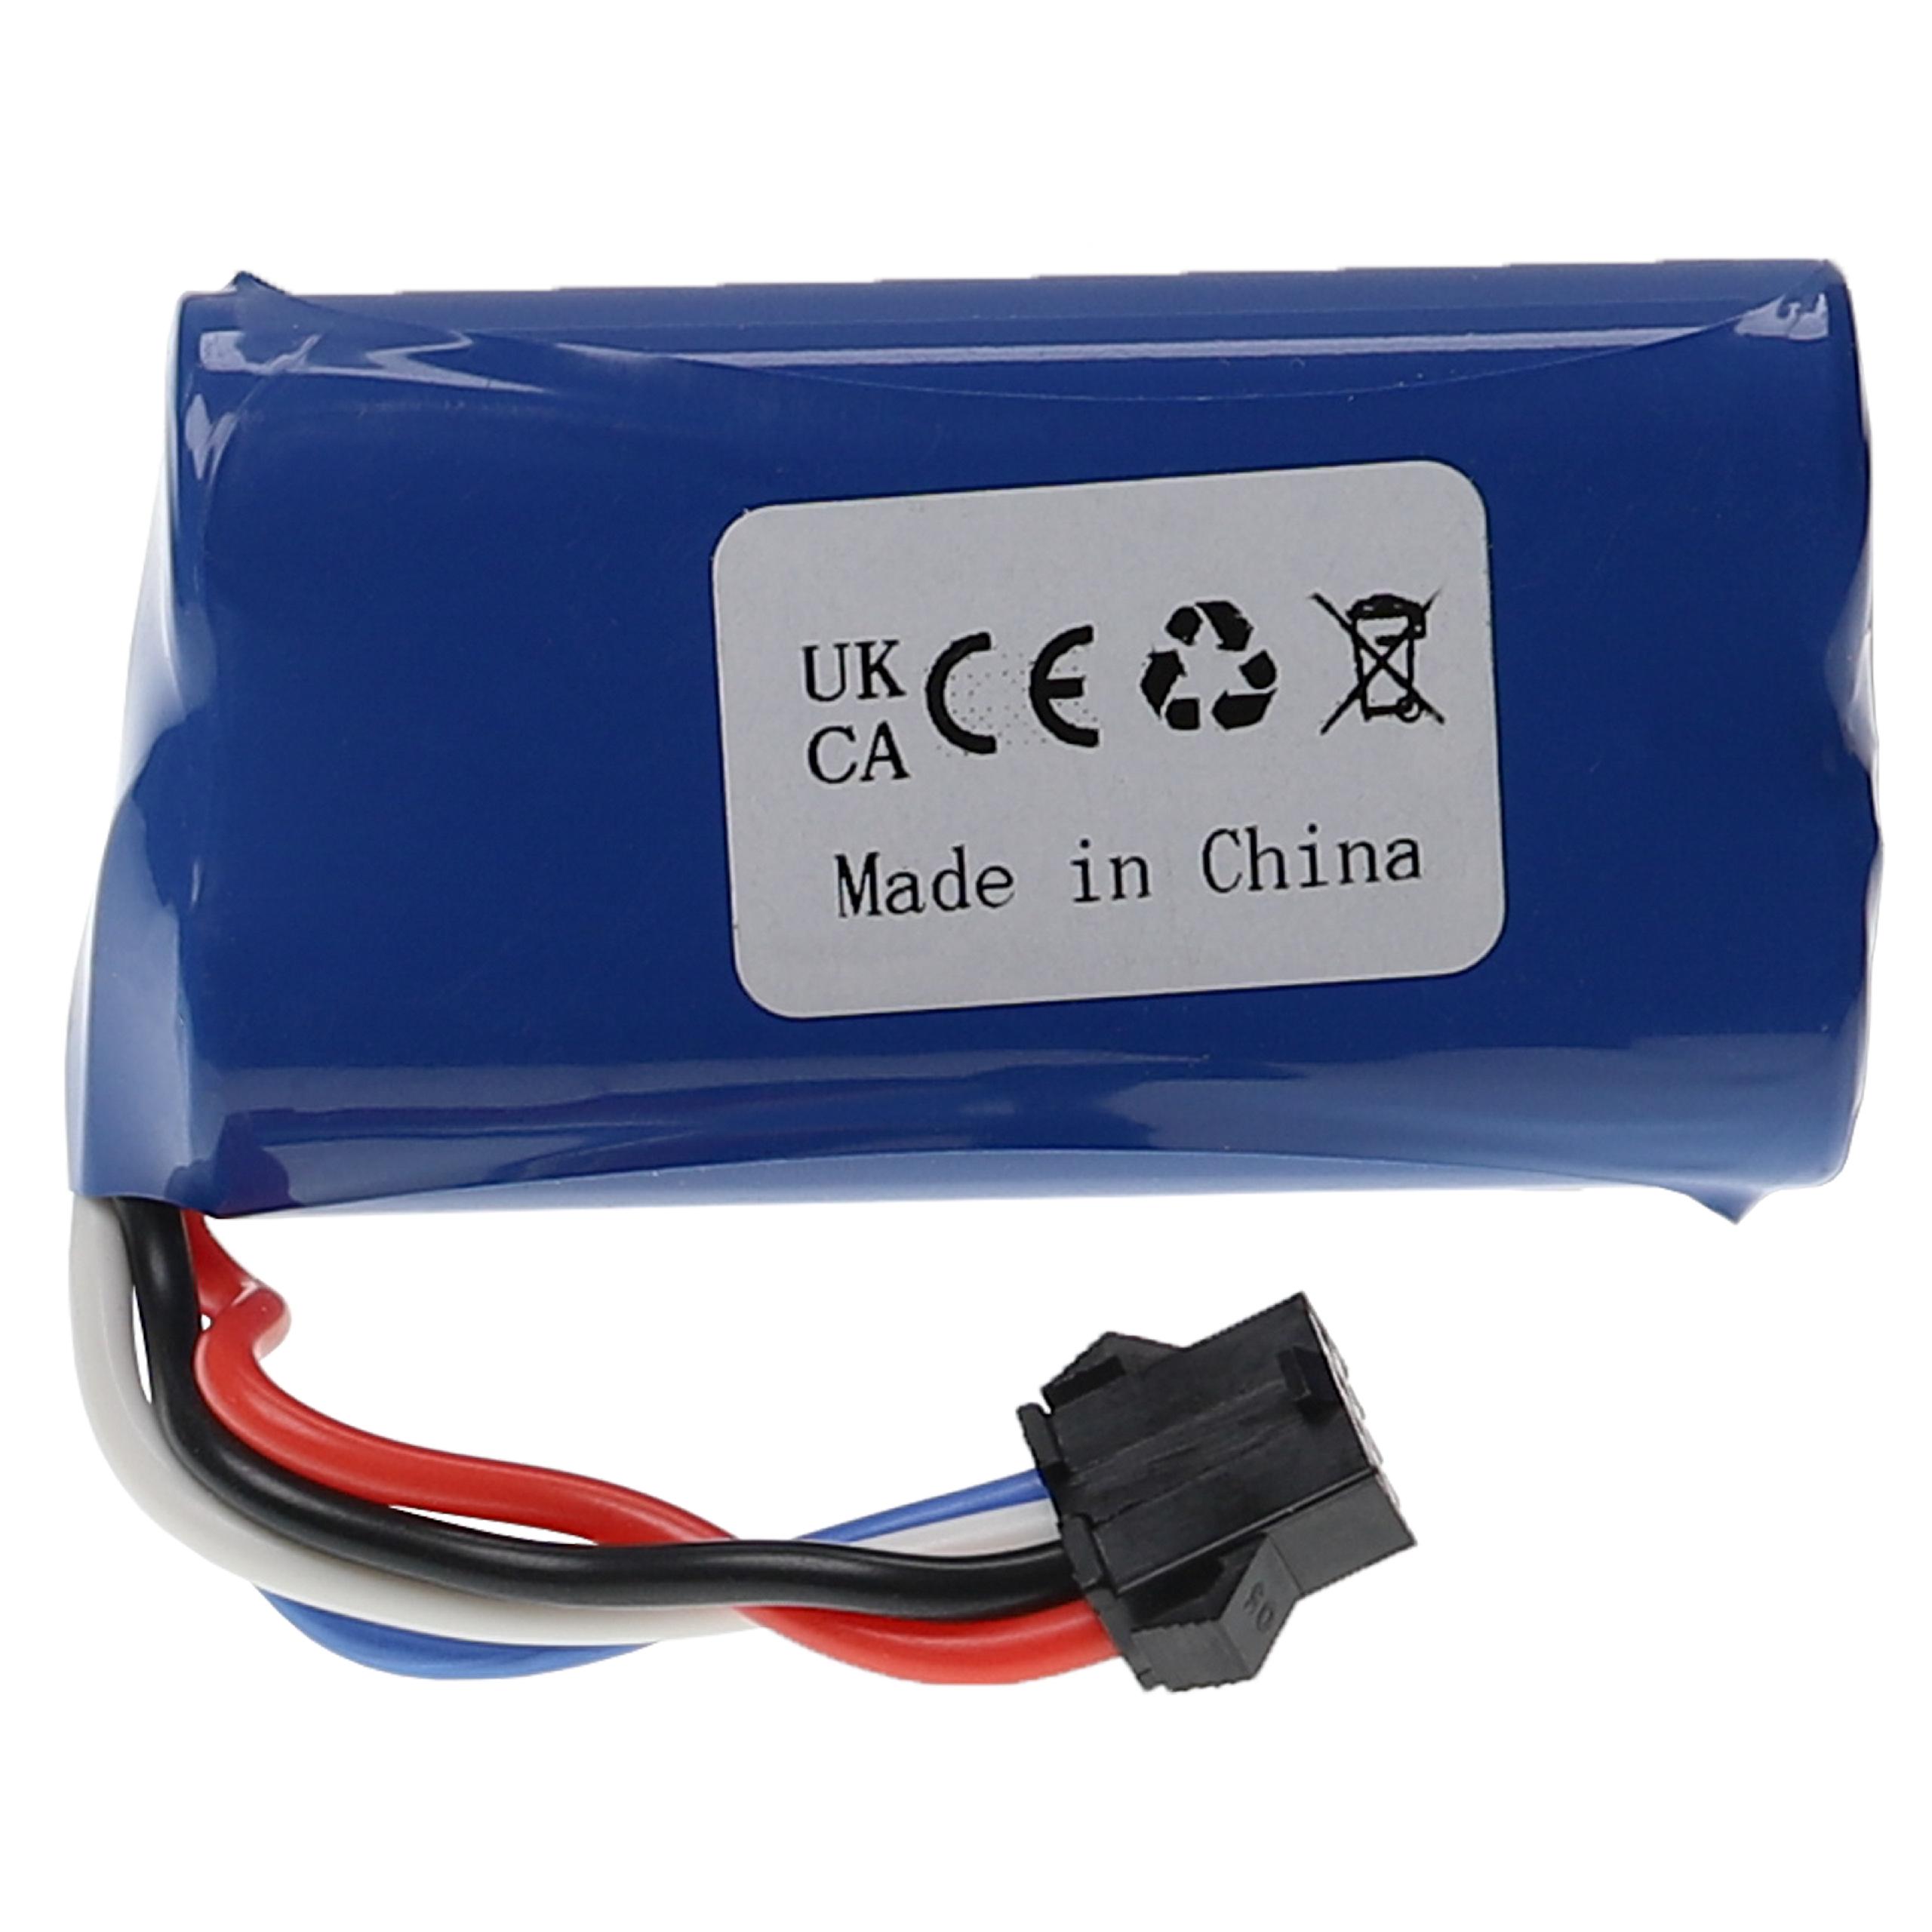 Model Making Device Battery for UDI 002, 902 / Huanqi 961, 962 - 1500mAh 7.4V Li-Ion, T-plug